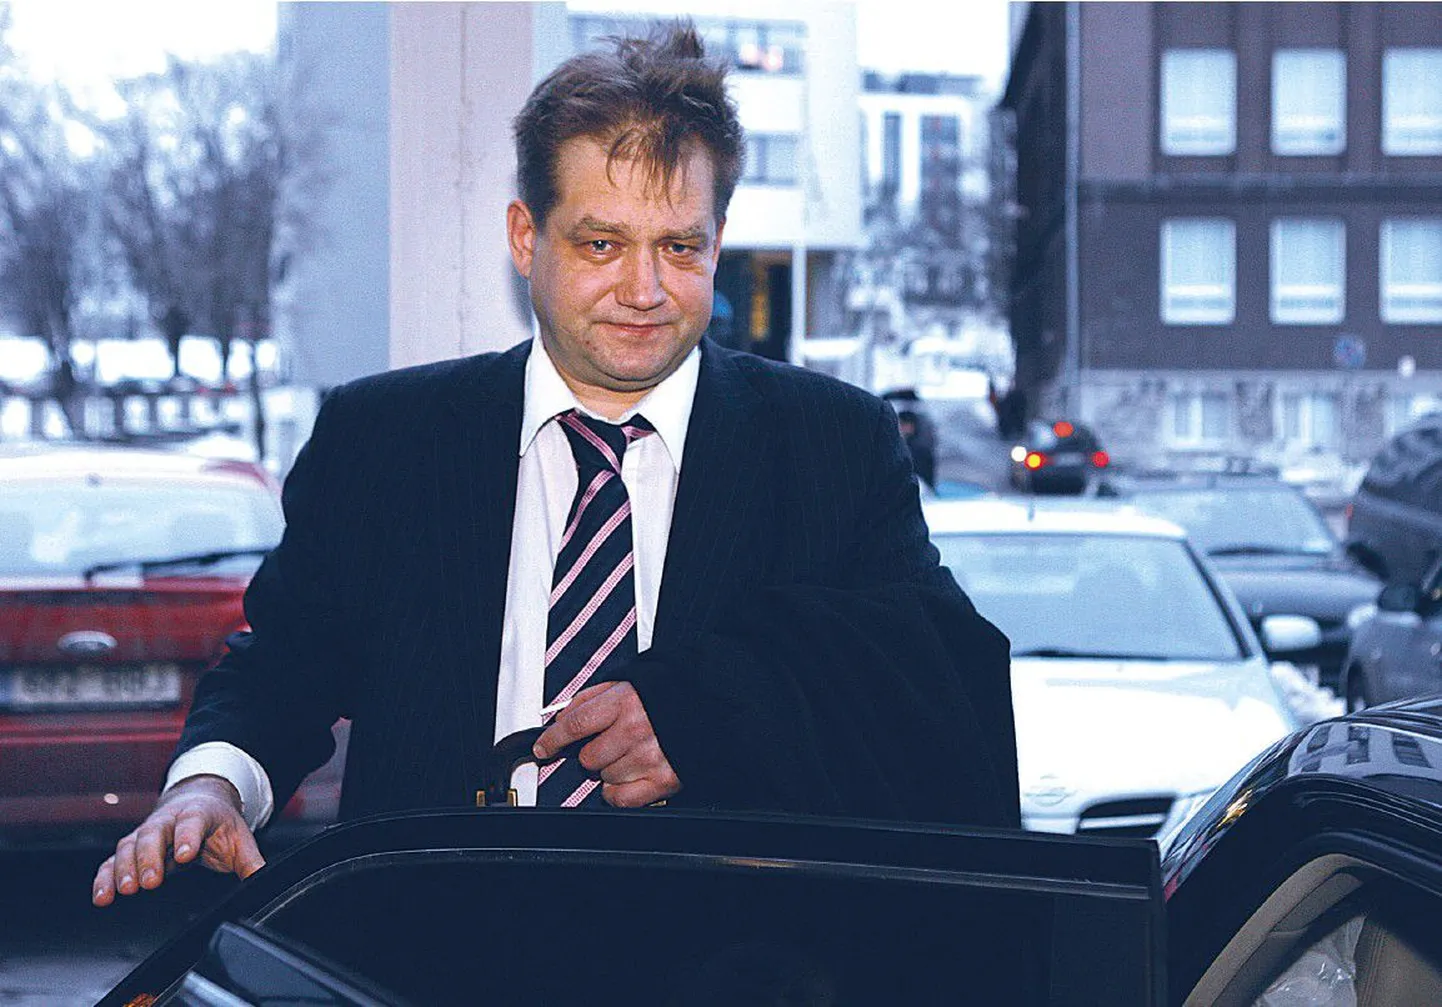 Eile veidi enne kella nelja istus rahandusminister Ivari Padar ministeeriumi parklas autosse, et sõita Toompeale valitsuskabineti nõupidamisele.